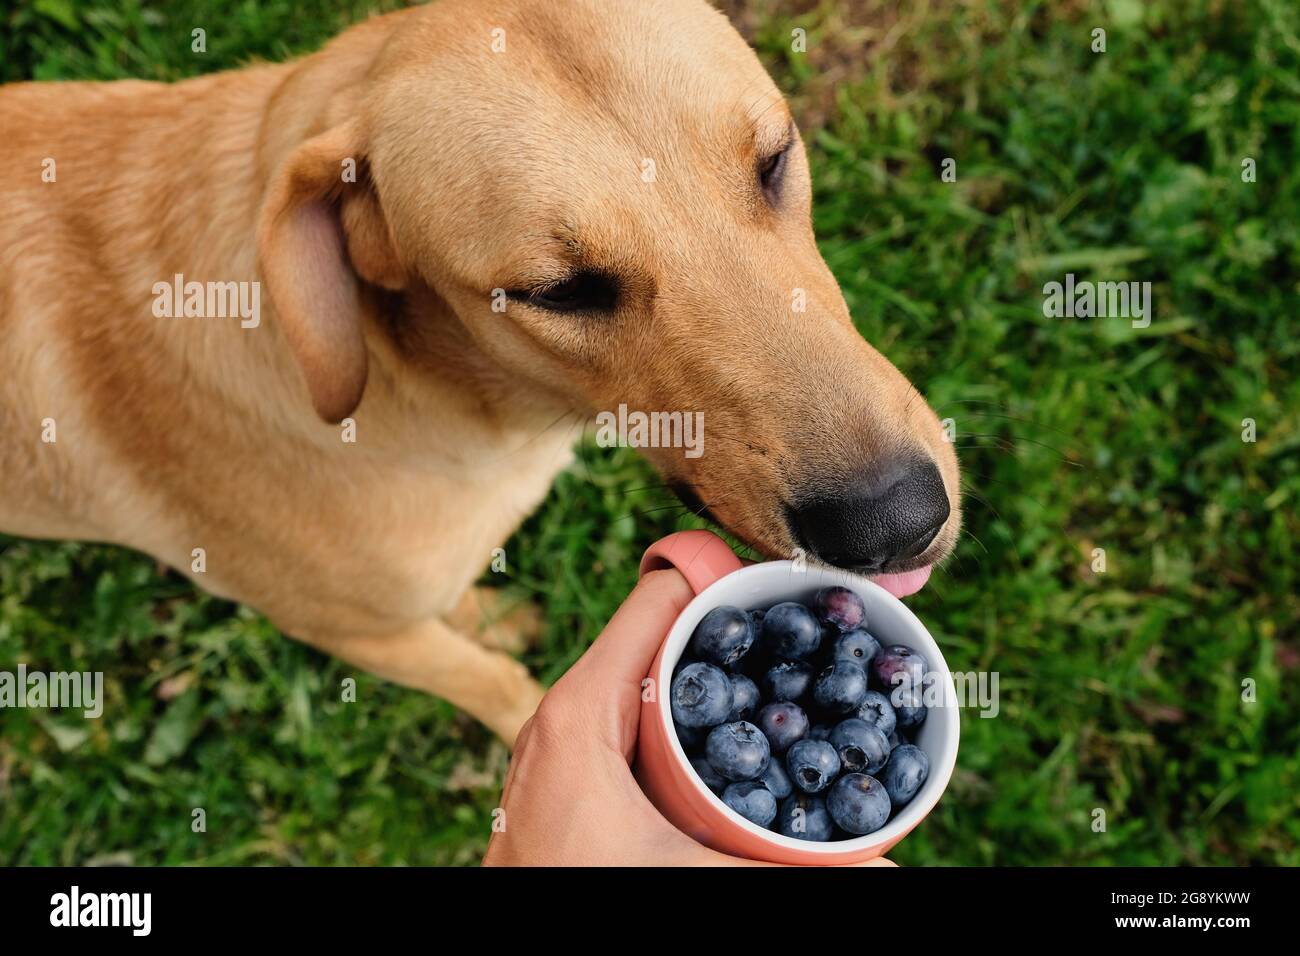 Perro y una taza de arándanos en la mano sobre el fondo de un césped verde, vista superior. Foto de stock